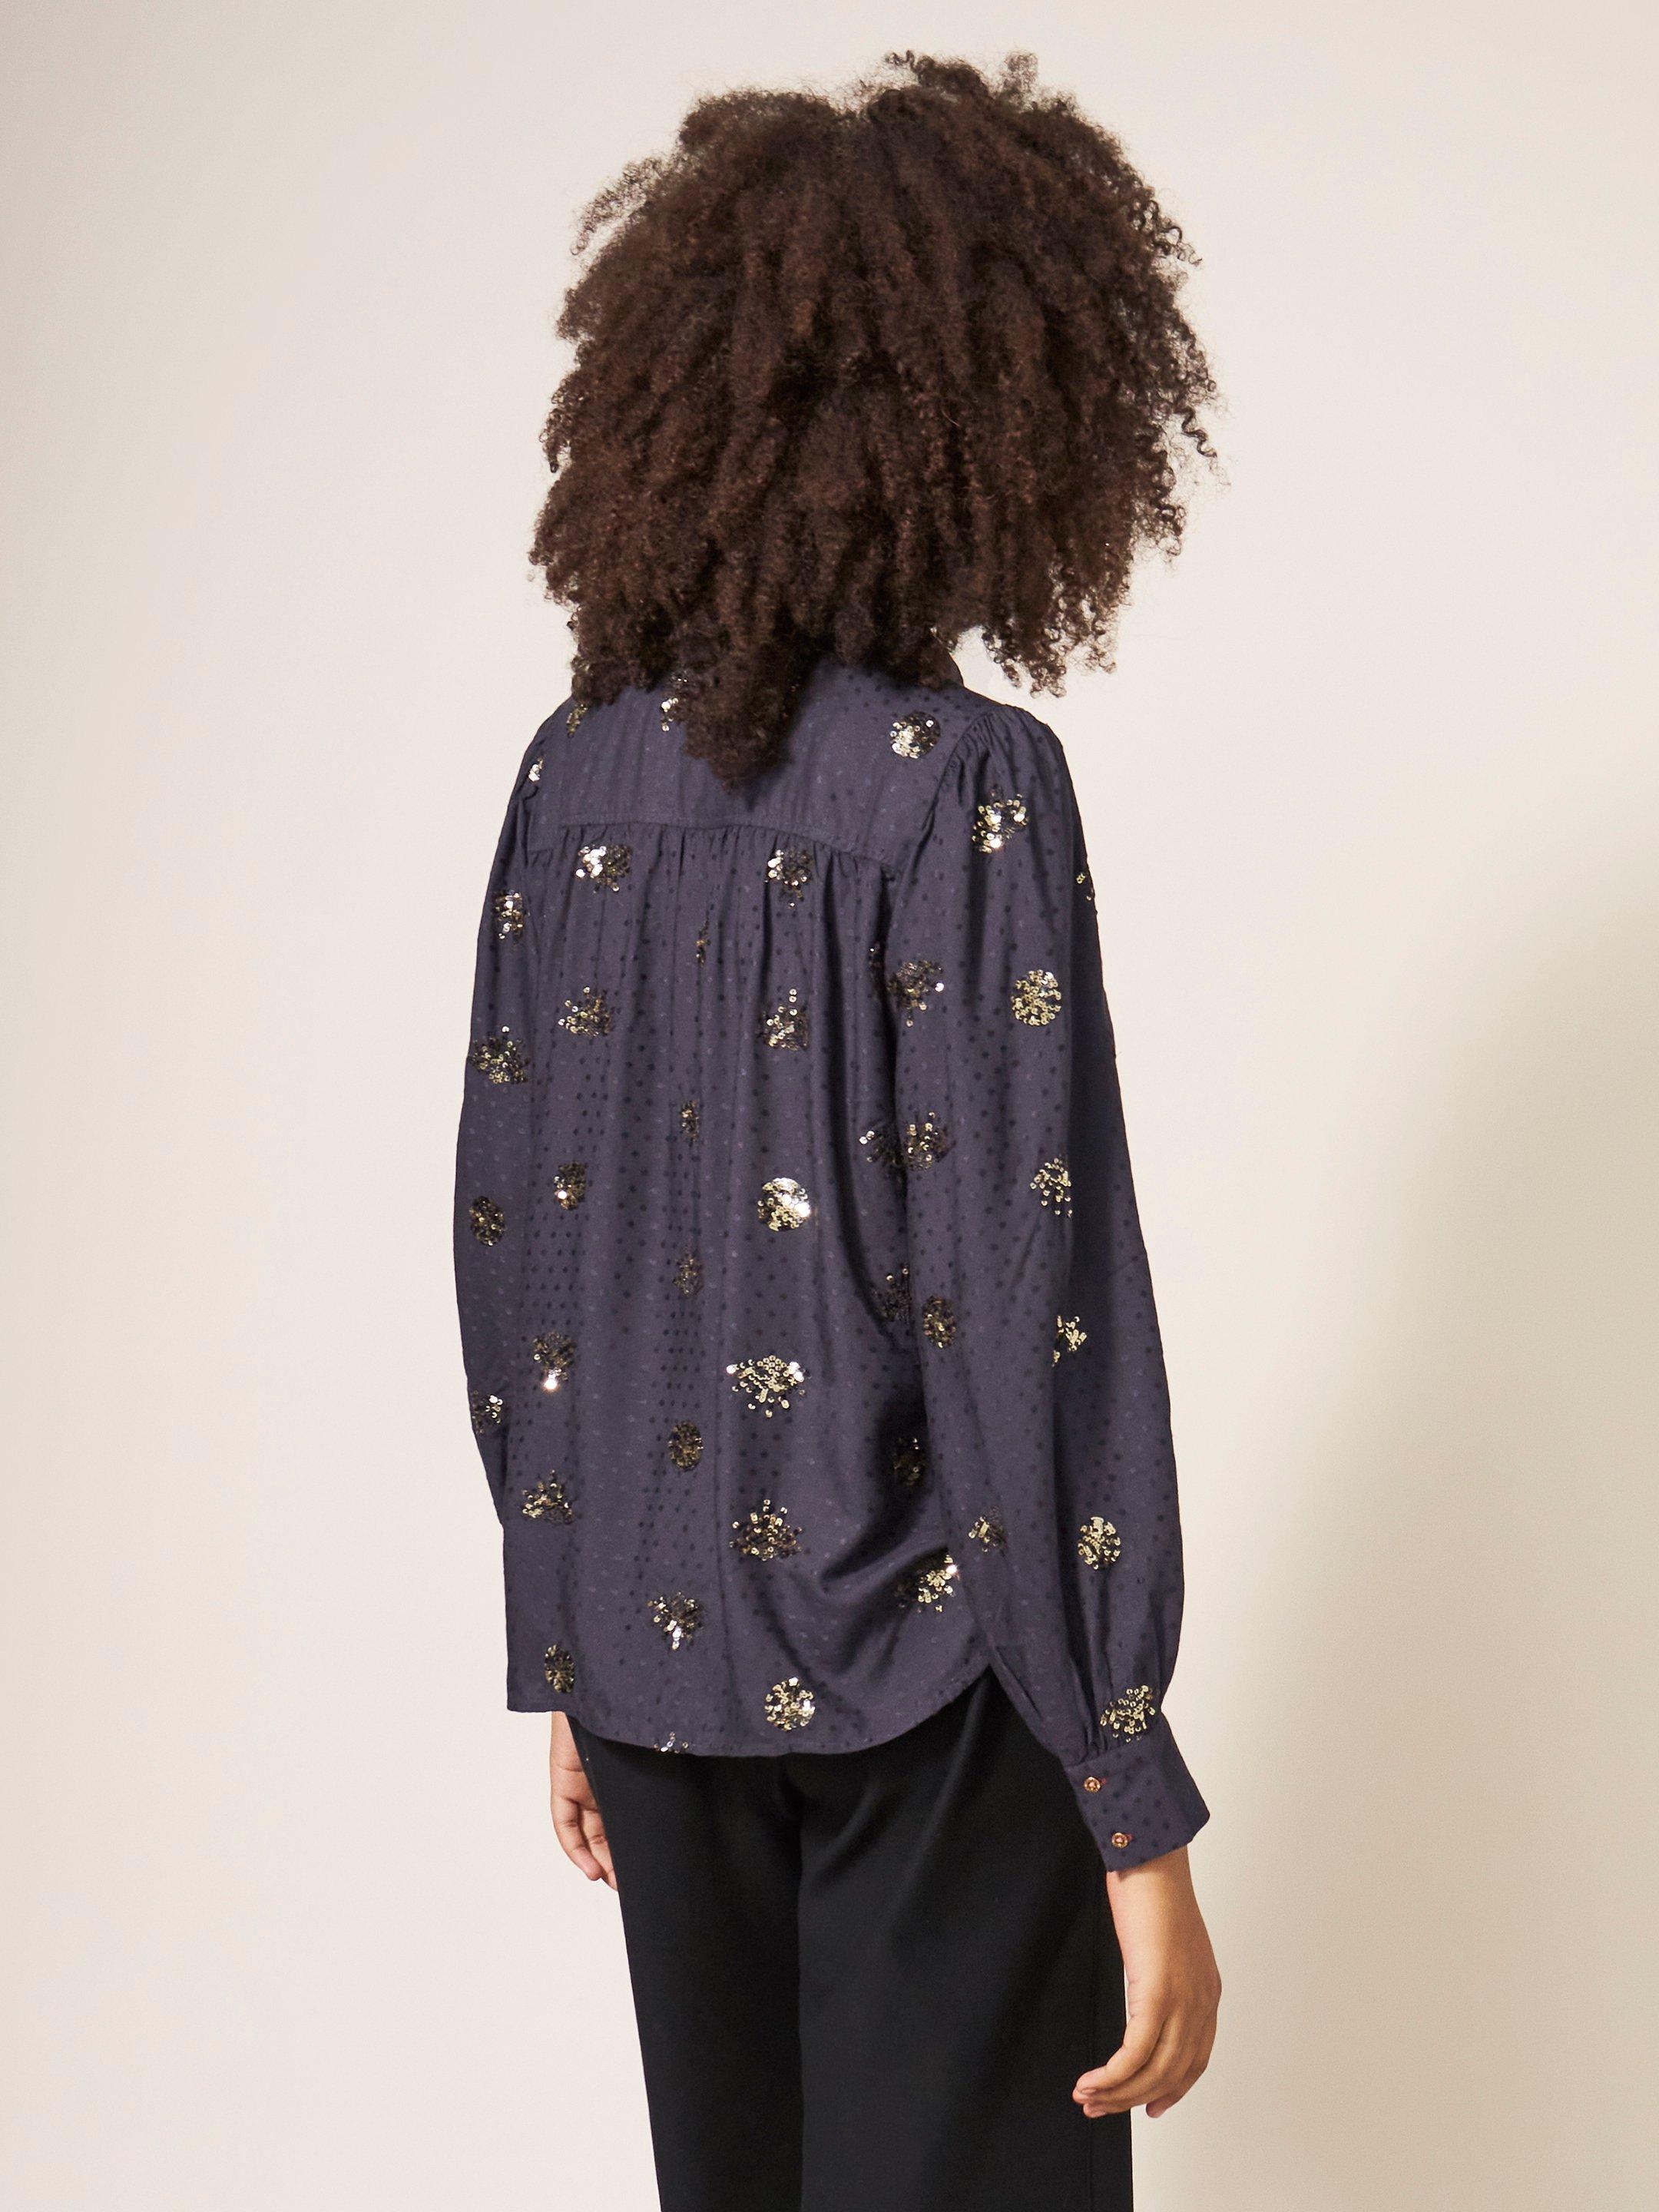 Ayla Sequin Shirt in BLK MLT - MODEL BACK